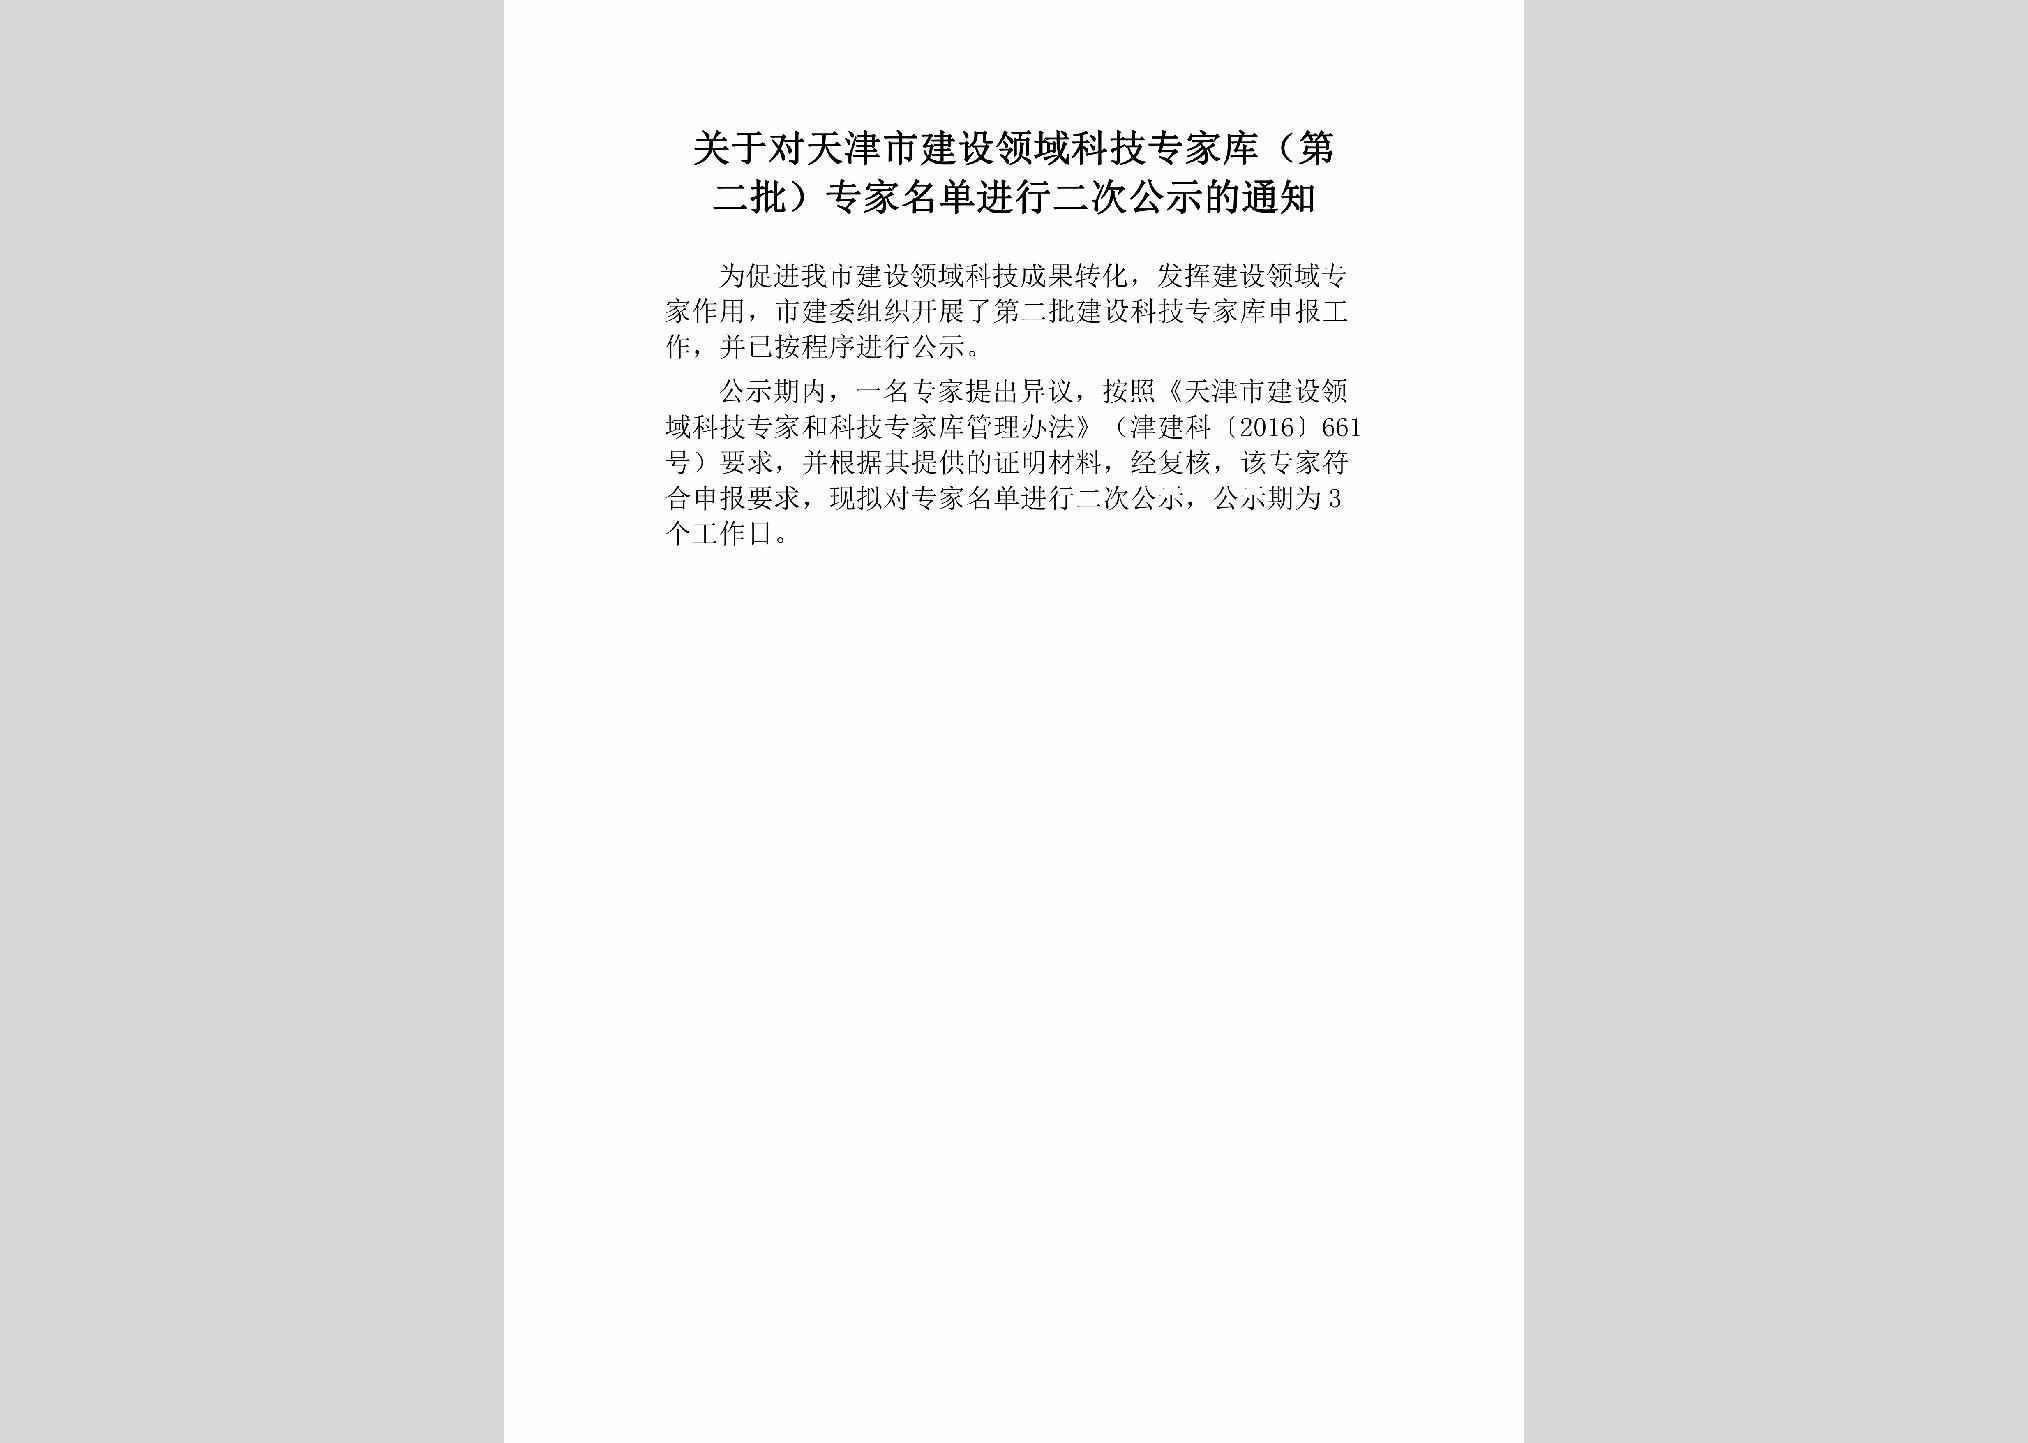 TJ-ZJMDECJS-2018：关于对天津市建设领域科技专家库（第二批）专家名单进行二次公示的通知